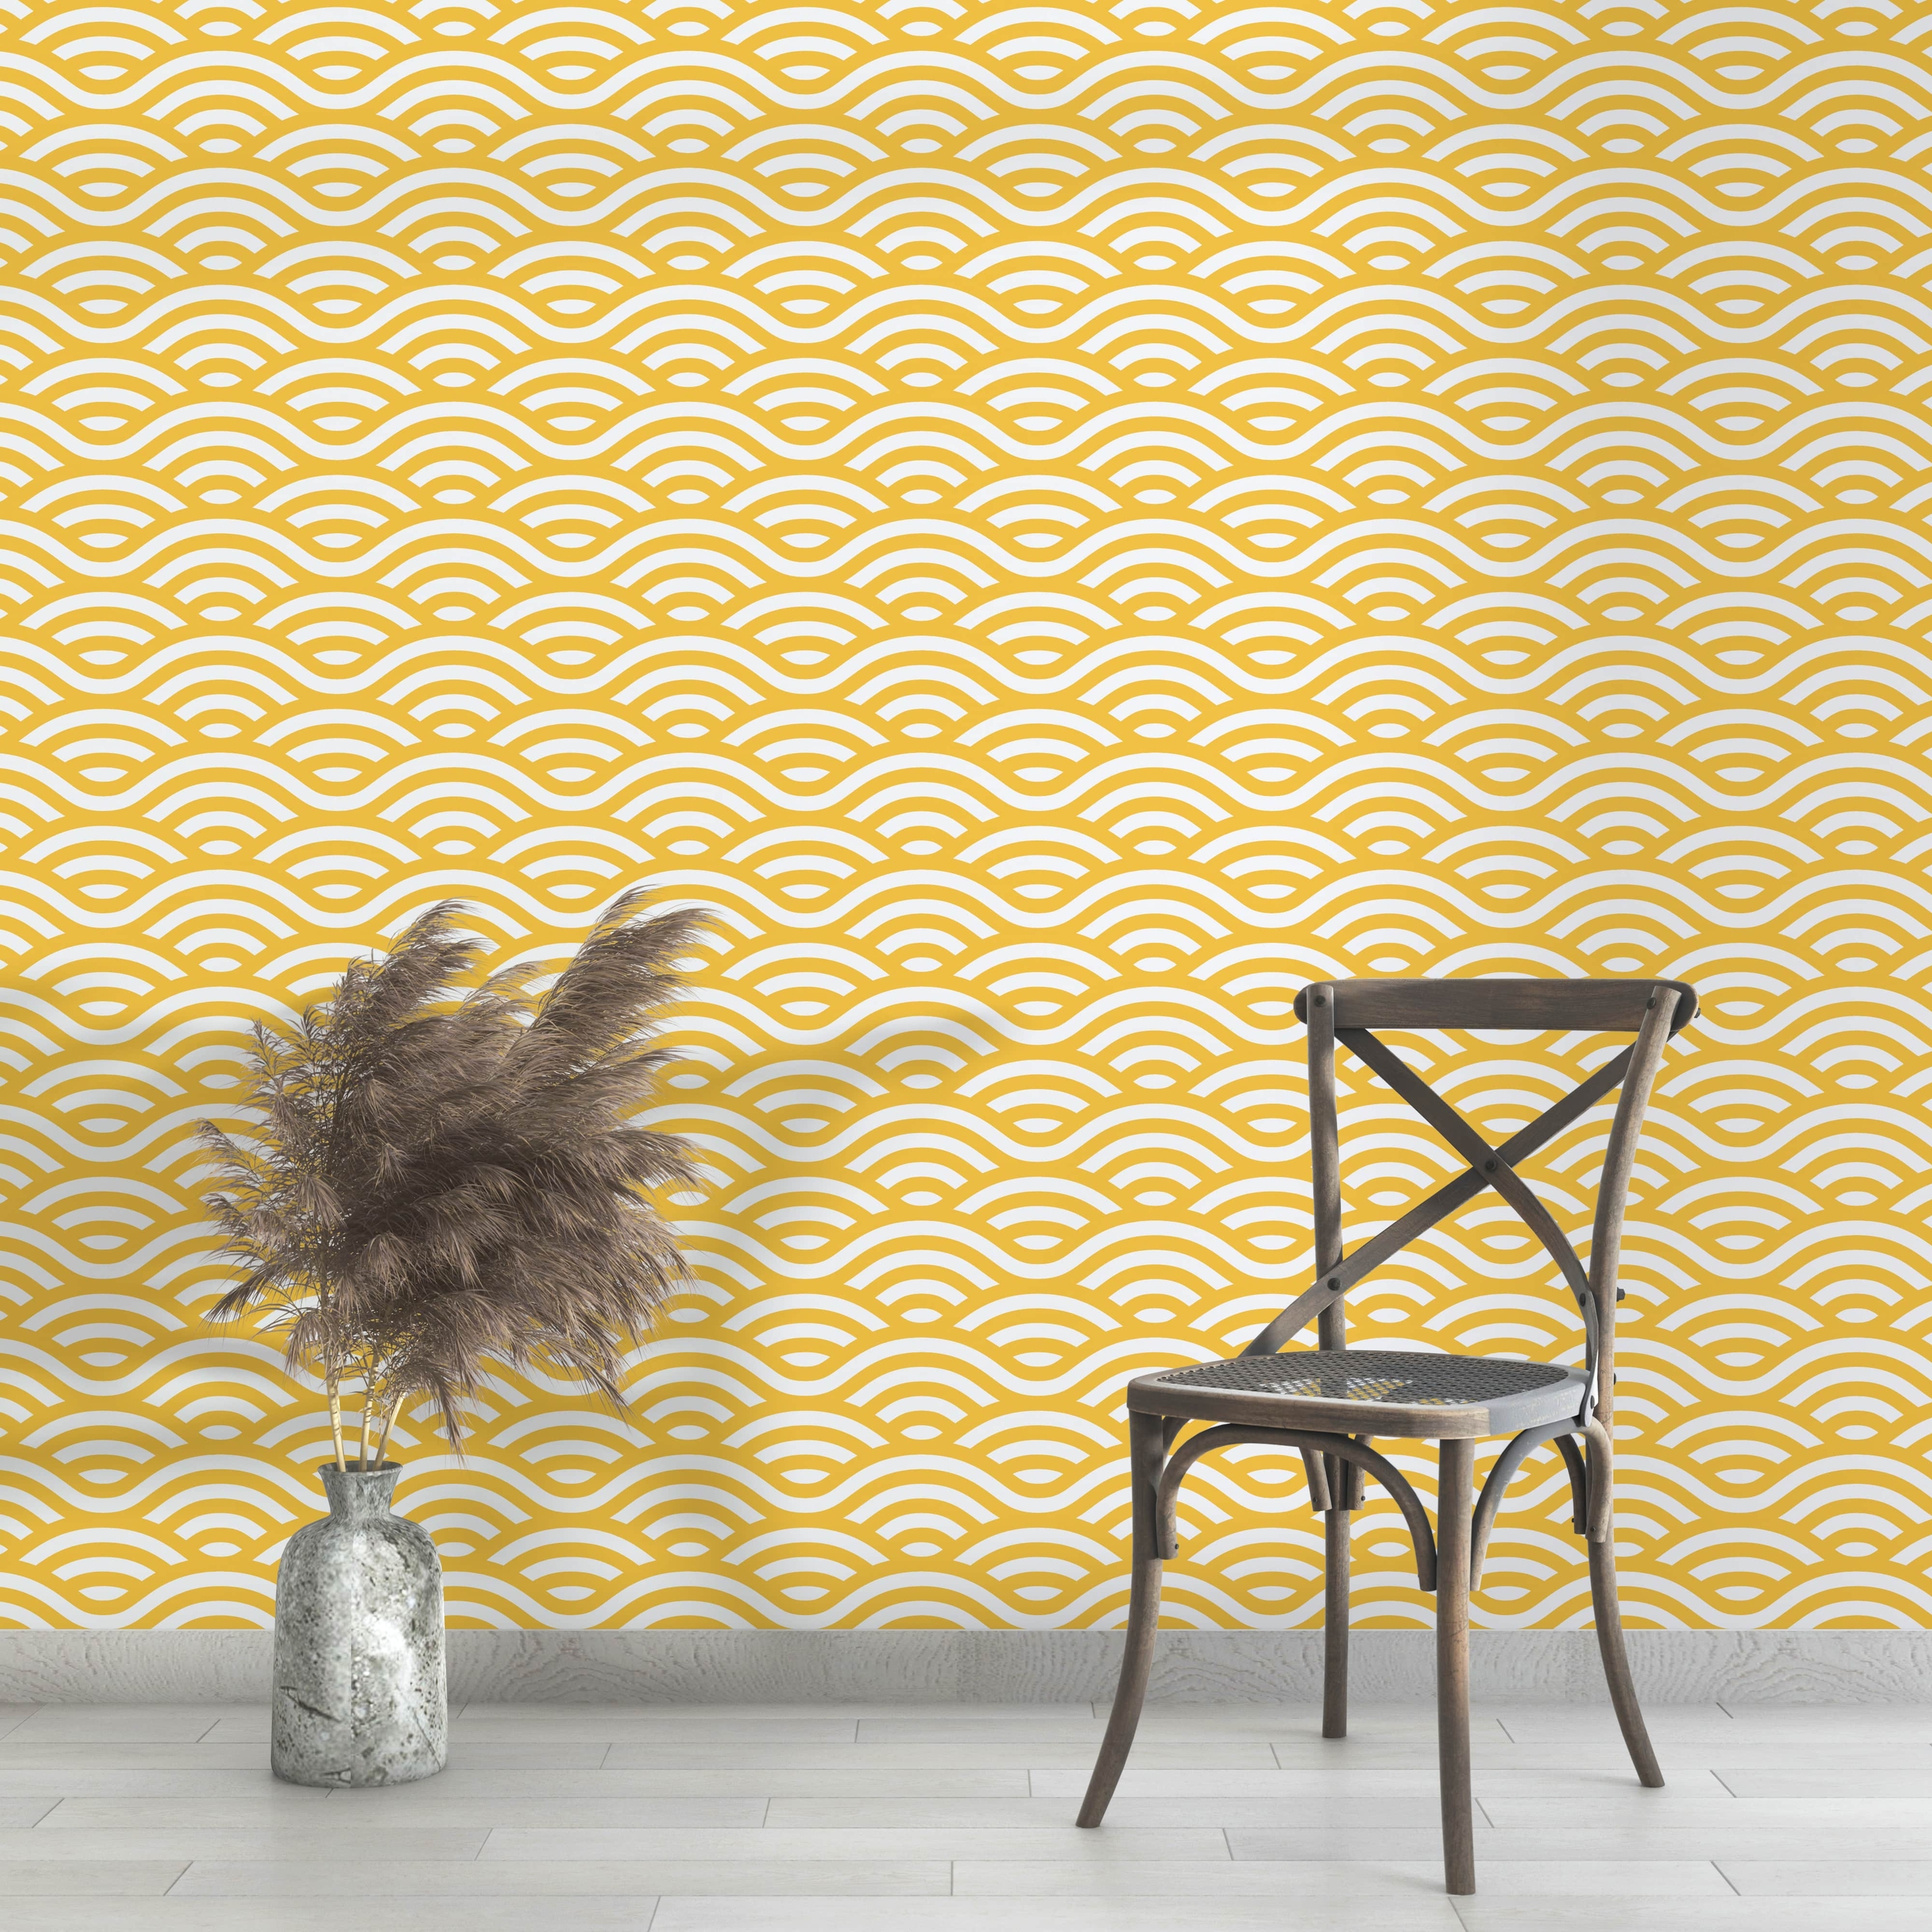 PP40-papier-peint-adhesif-decoratif-revetement-vinyle-vague-motifs-japonaise-jaune-nouilles-renovation-meuble-mur-5